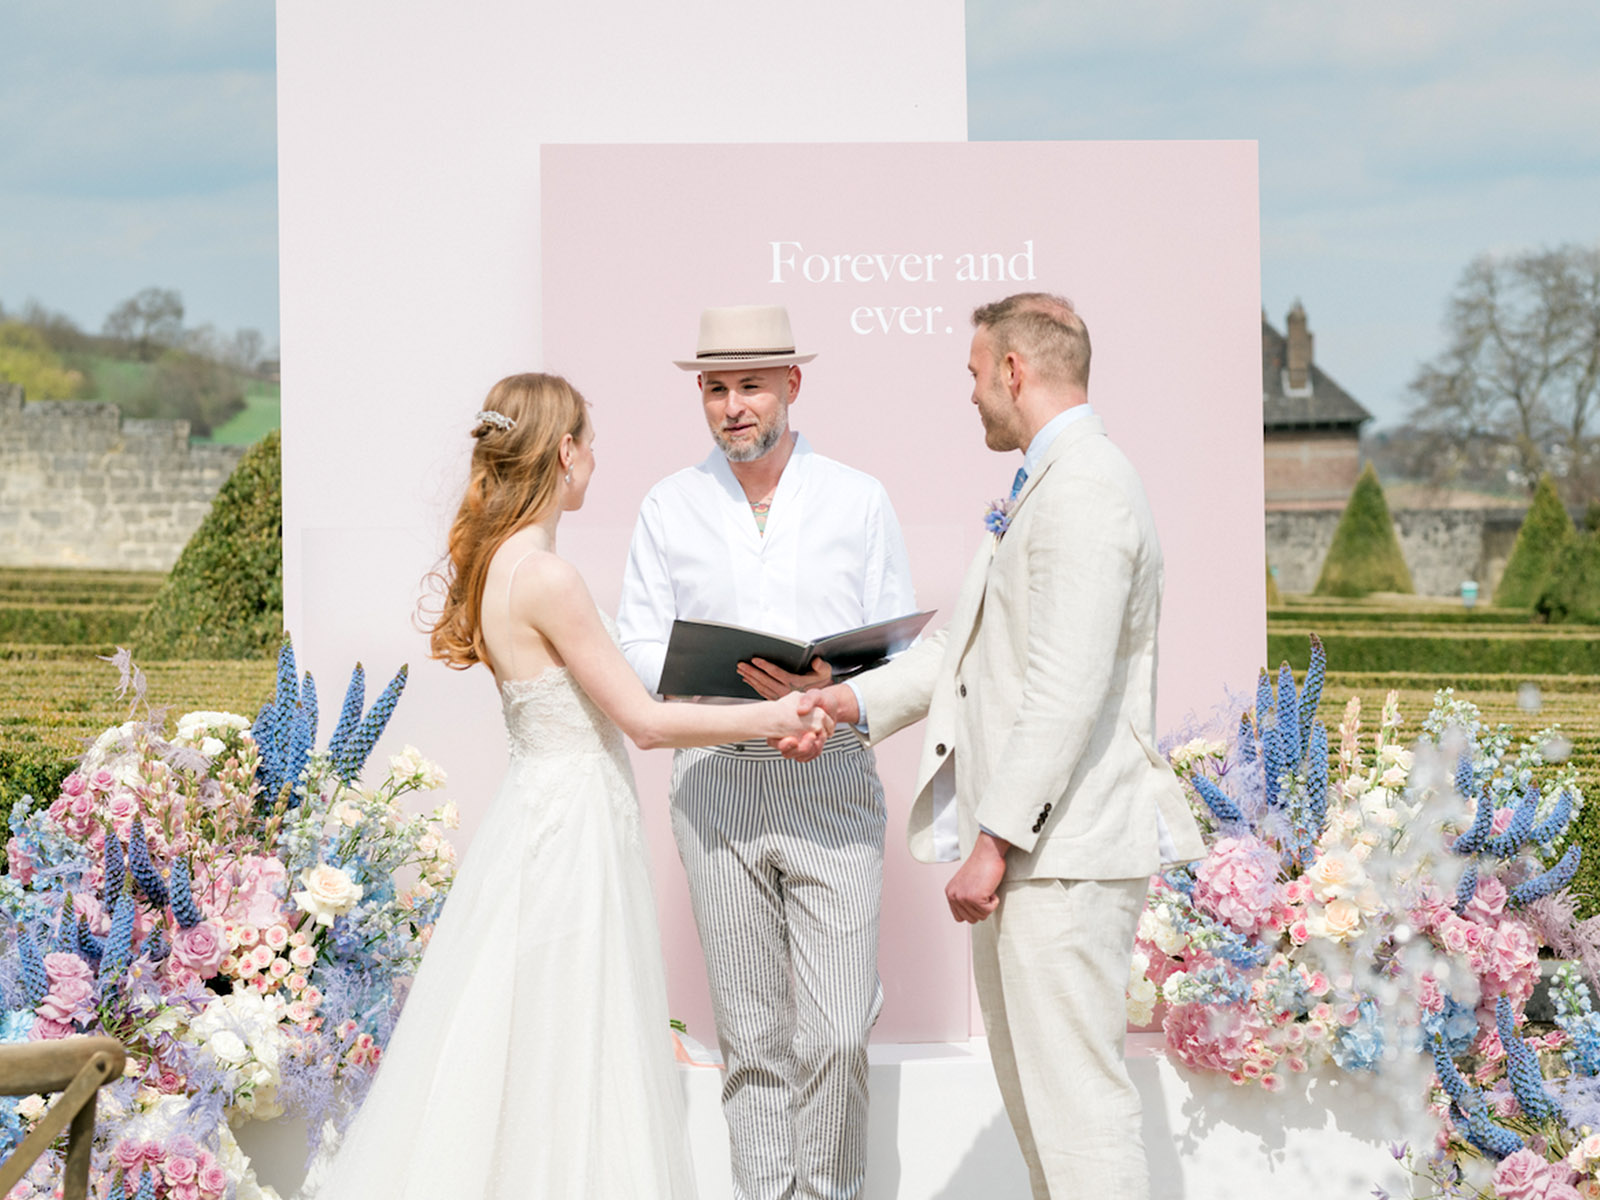 The Sweetest Weddings Bloemenservice Nederland - on Thursd